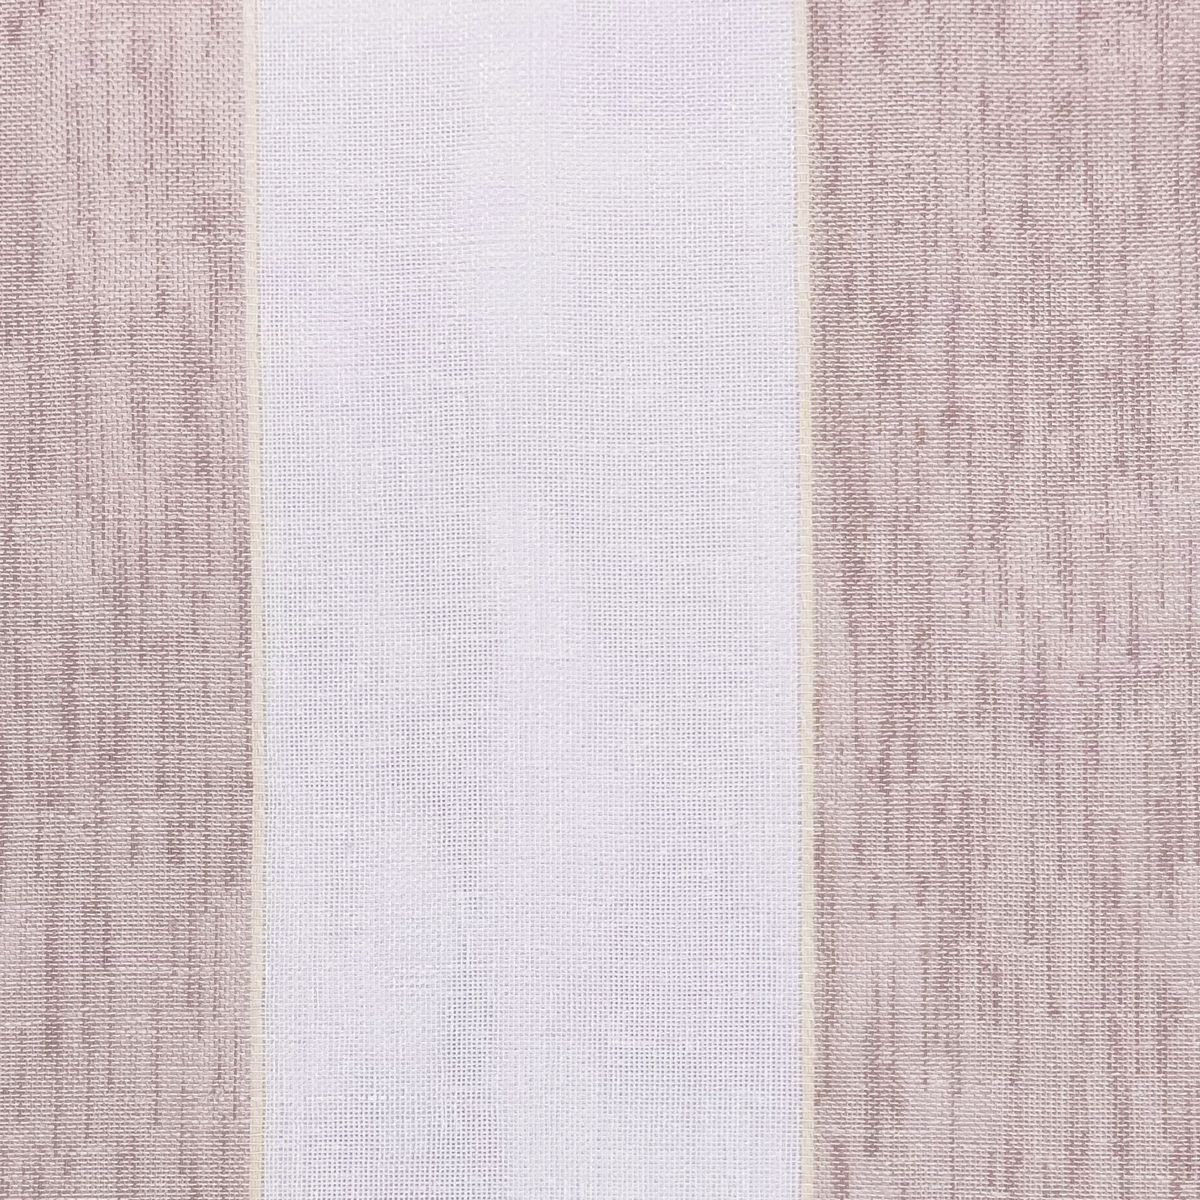 Icaria Blush Fabric by Chatham Glyn